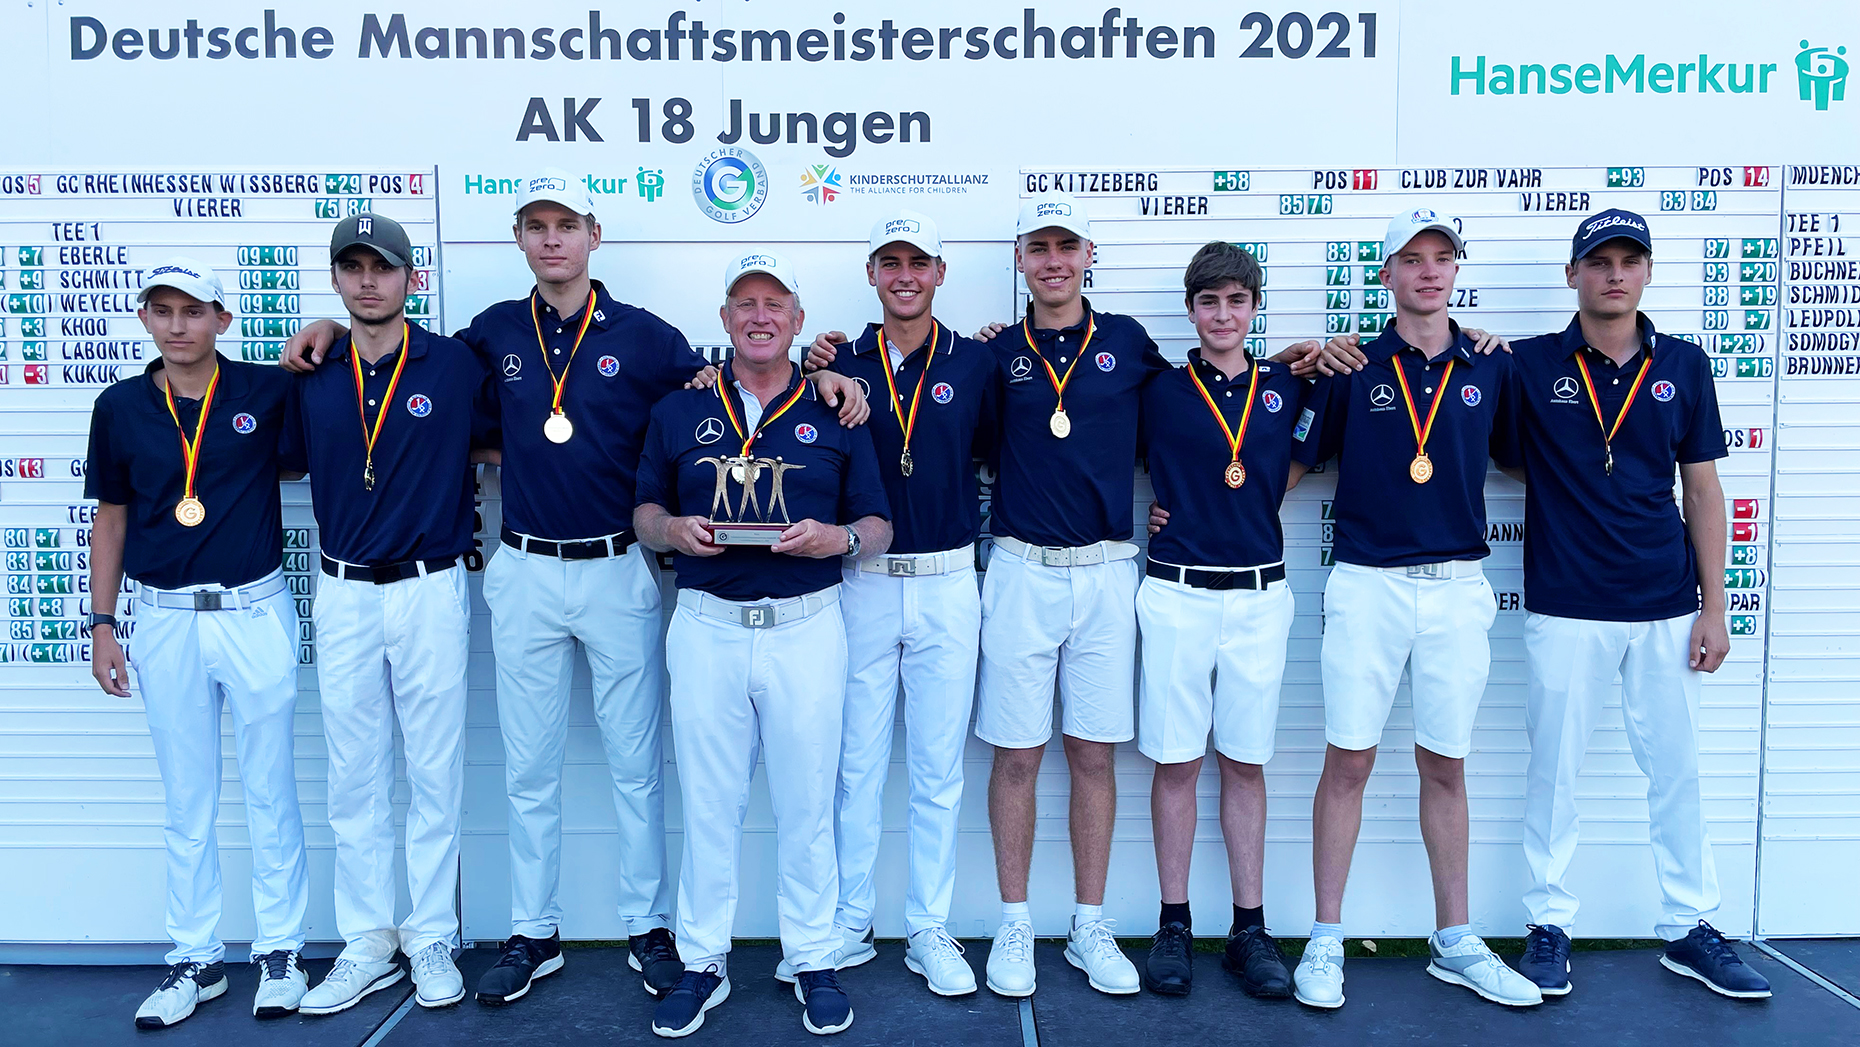 Starke Vierer waren die Grundlage für den DMM-Titel der Junioren des GC Mannheim-Viernheim, die den souveränen Auftritt im GC Augsburg mit ihrem Trainer Ted Long feierten. 